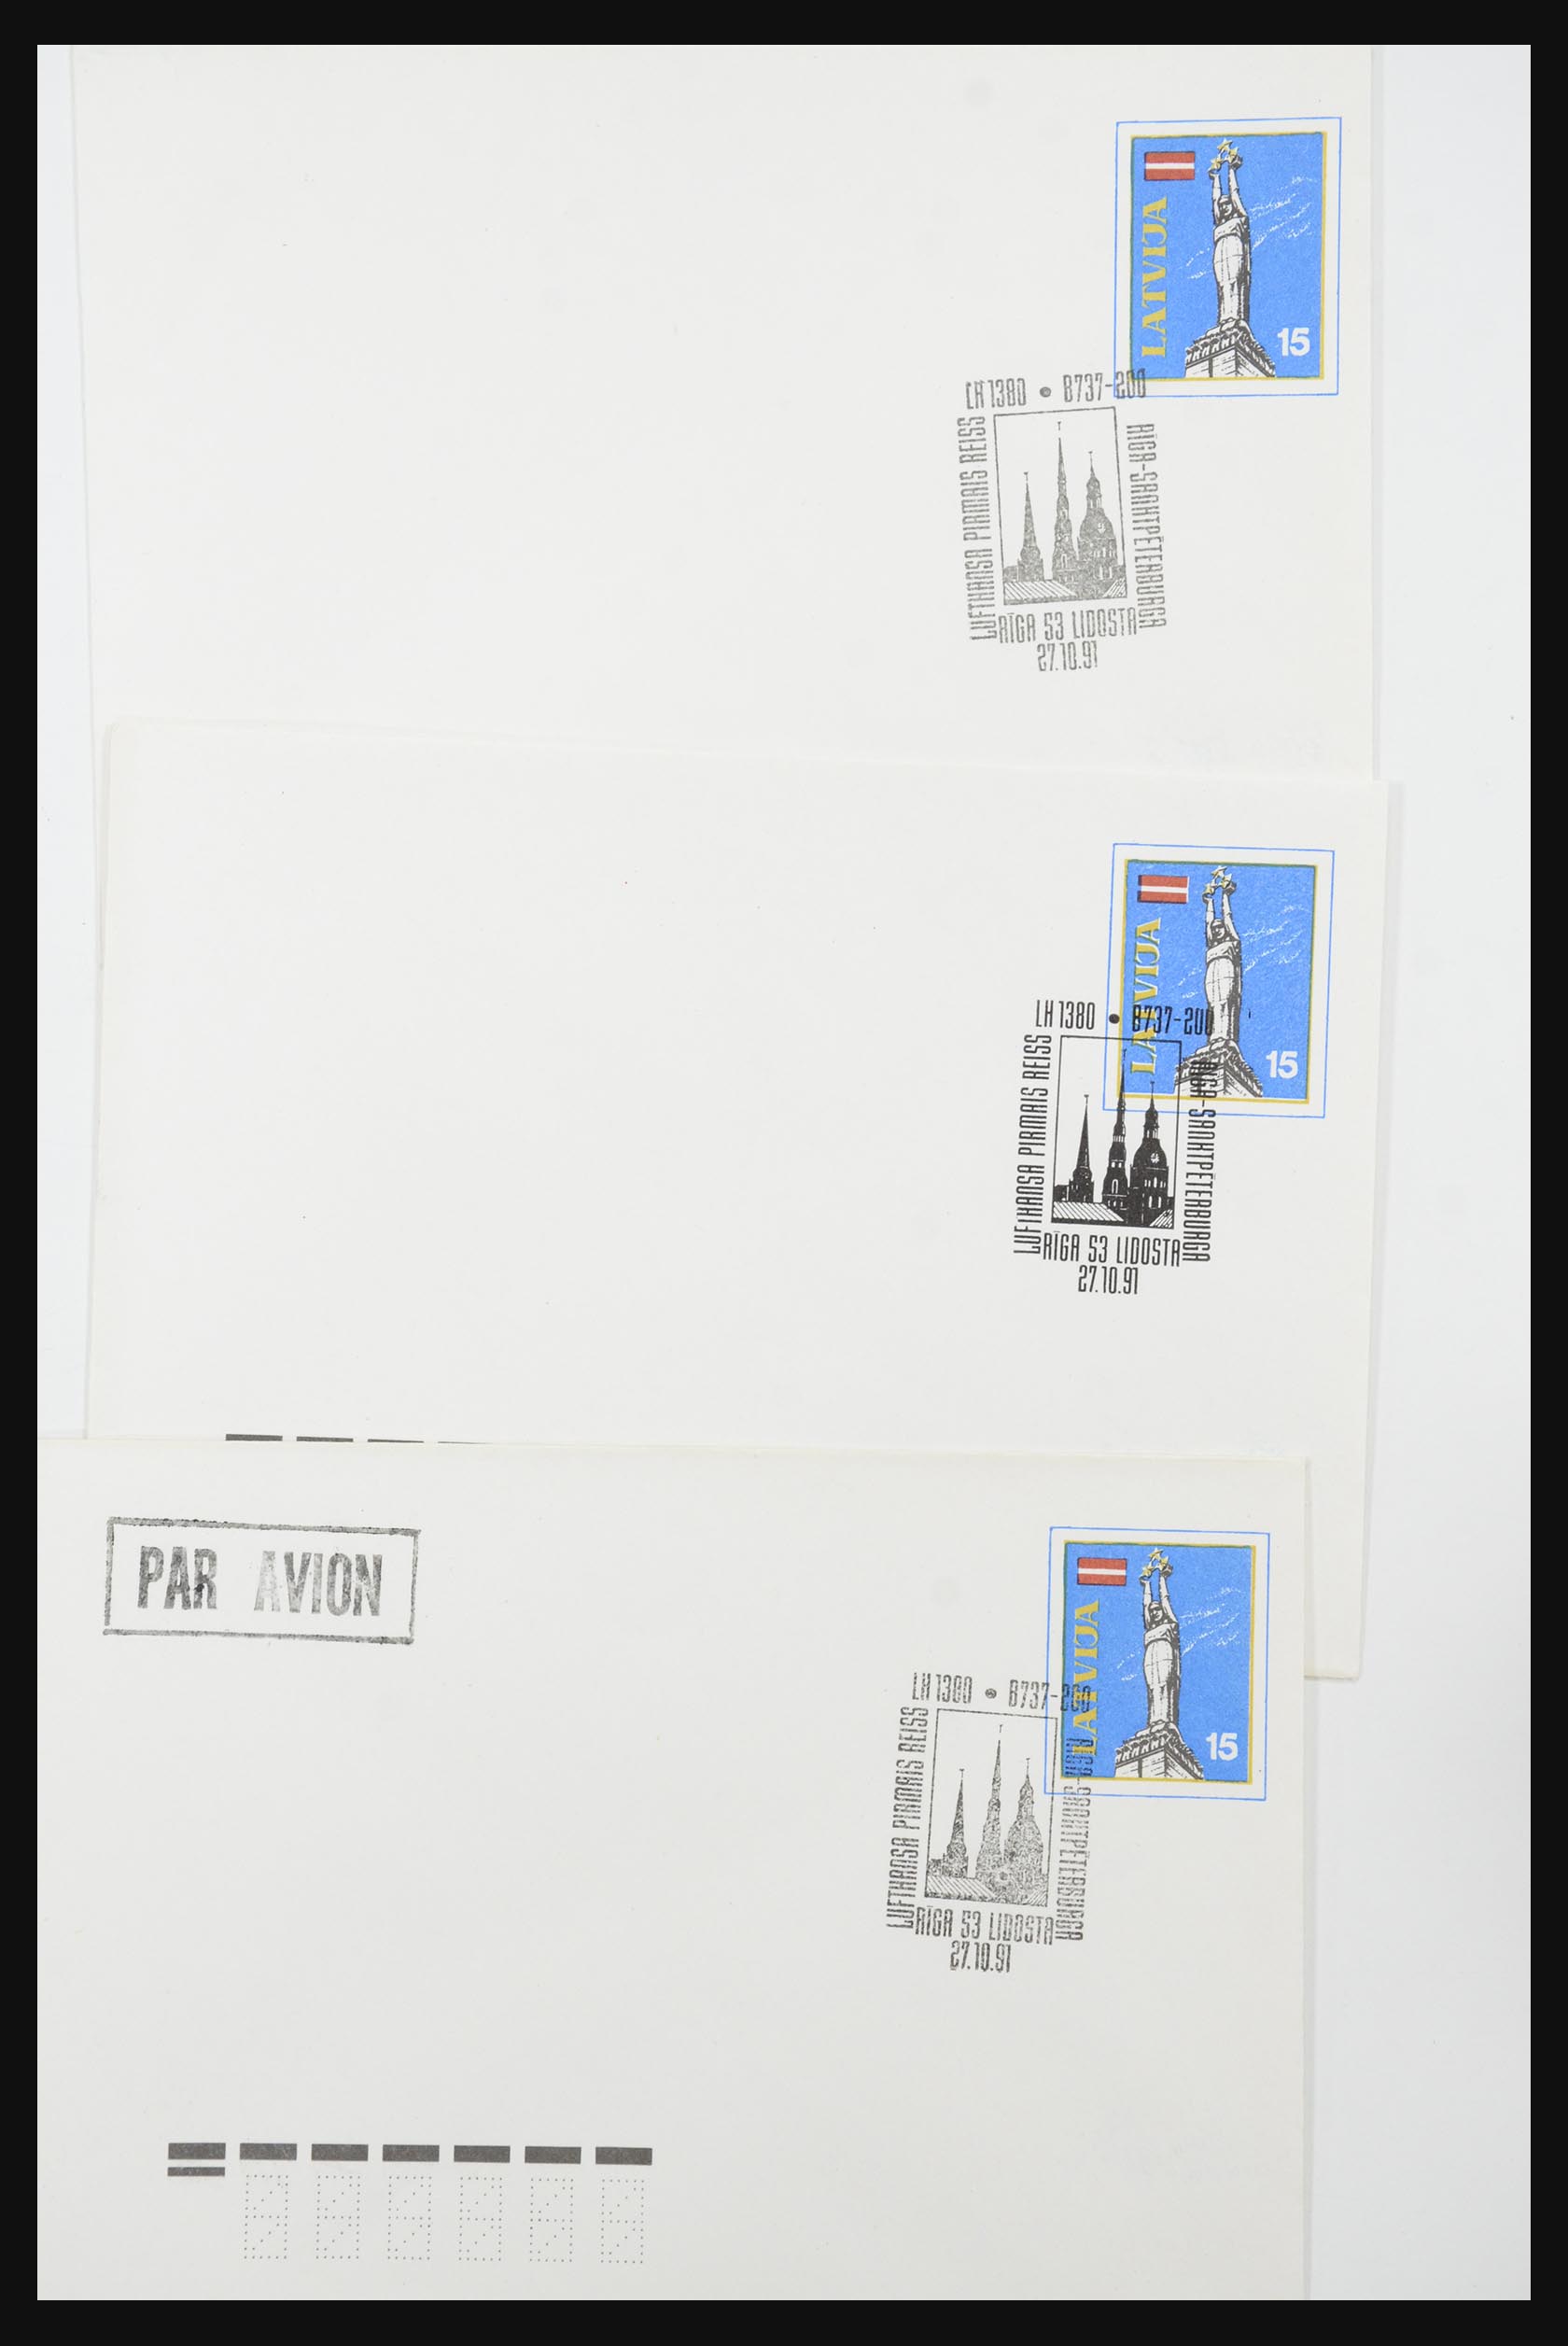 31584 055 - 31584 Letland brieven/FDC's en postwaardestukken 1990-1992.